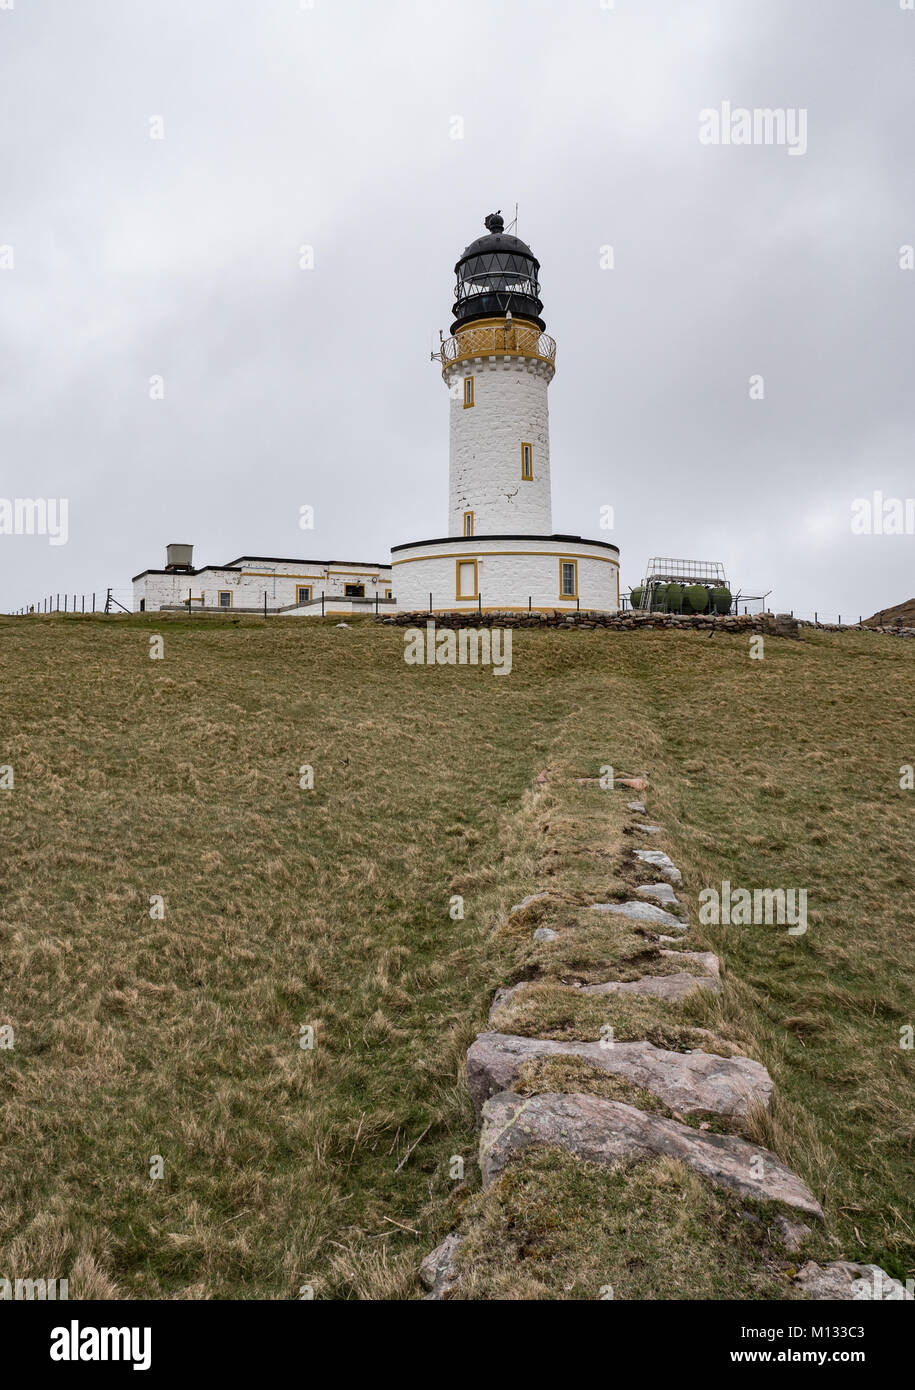 Le phare de Cape Wrath Lairg, dans les Highlands d'Ecosse. UK. Banque D'Images